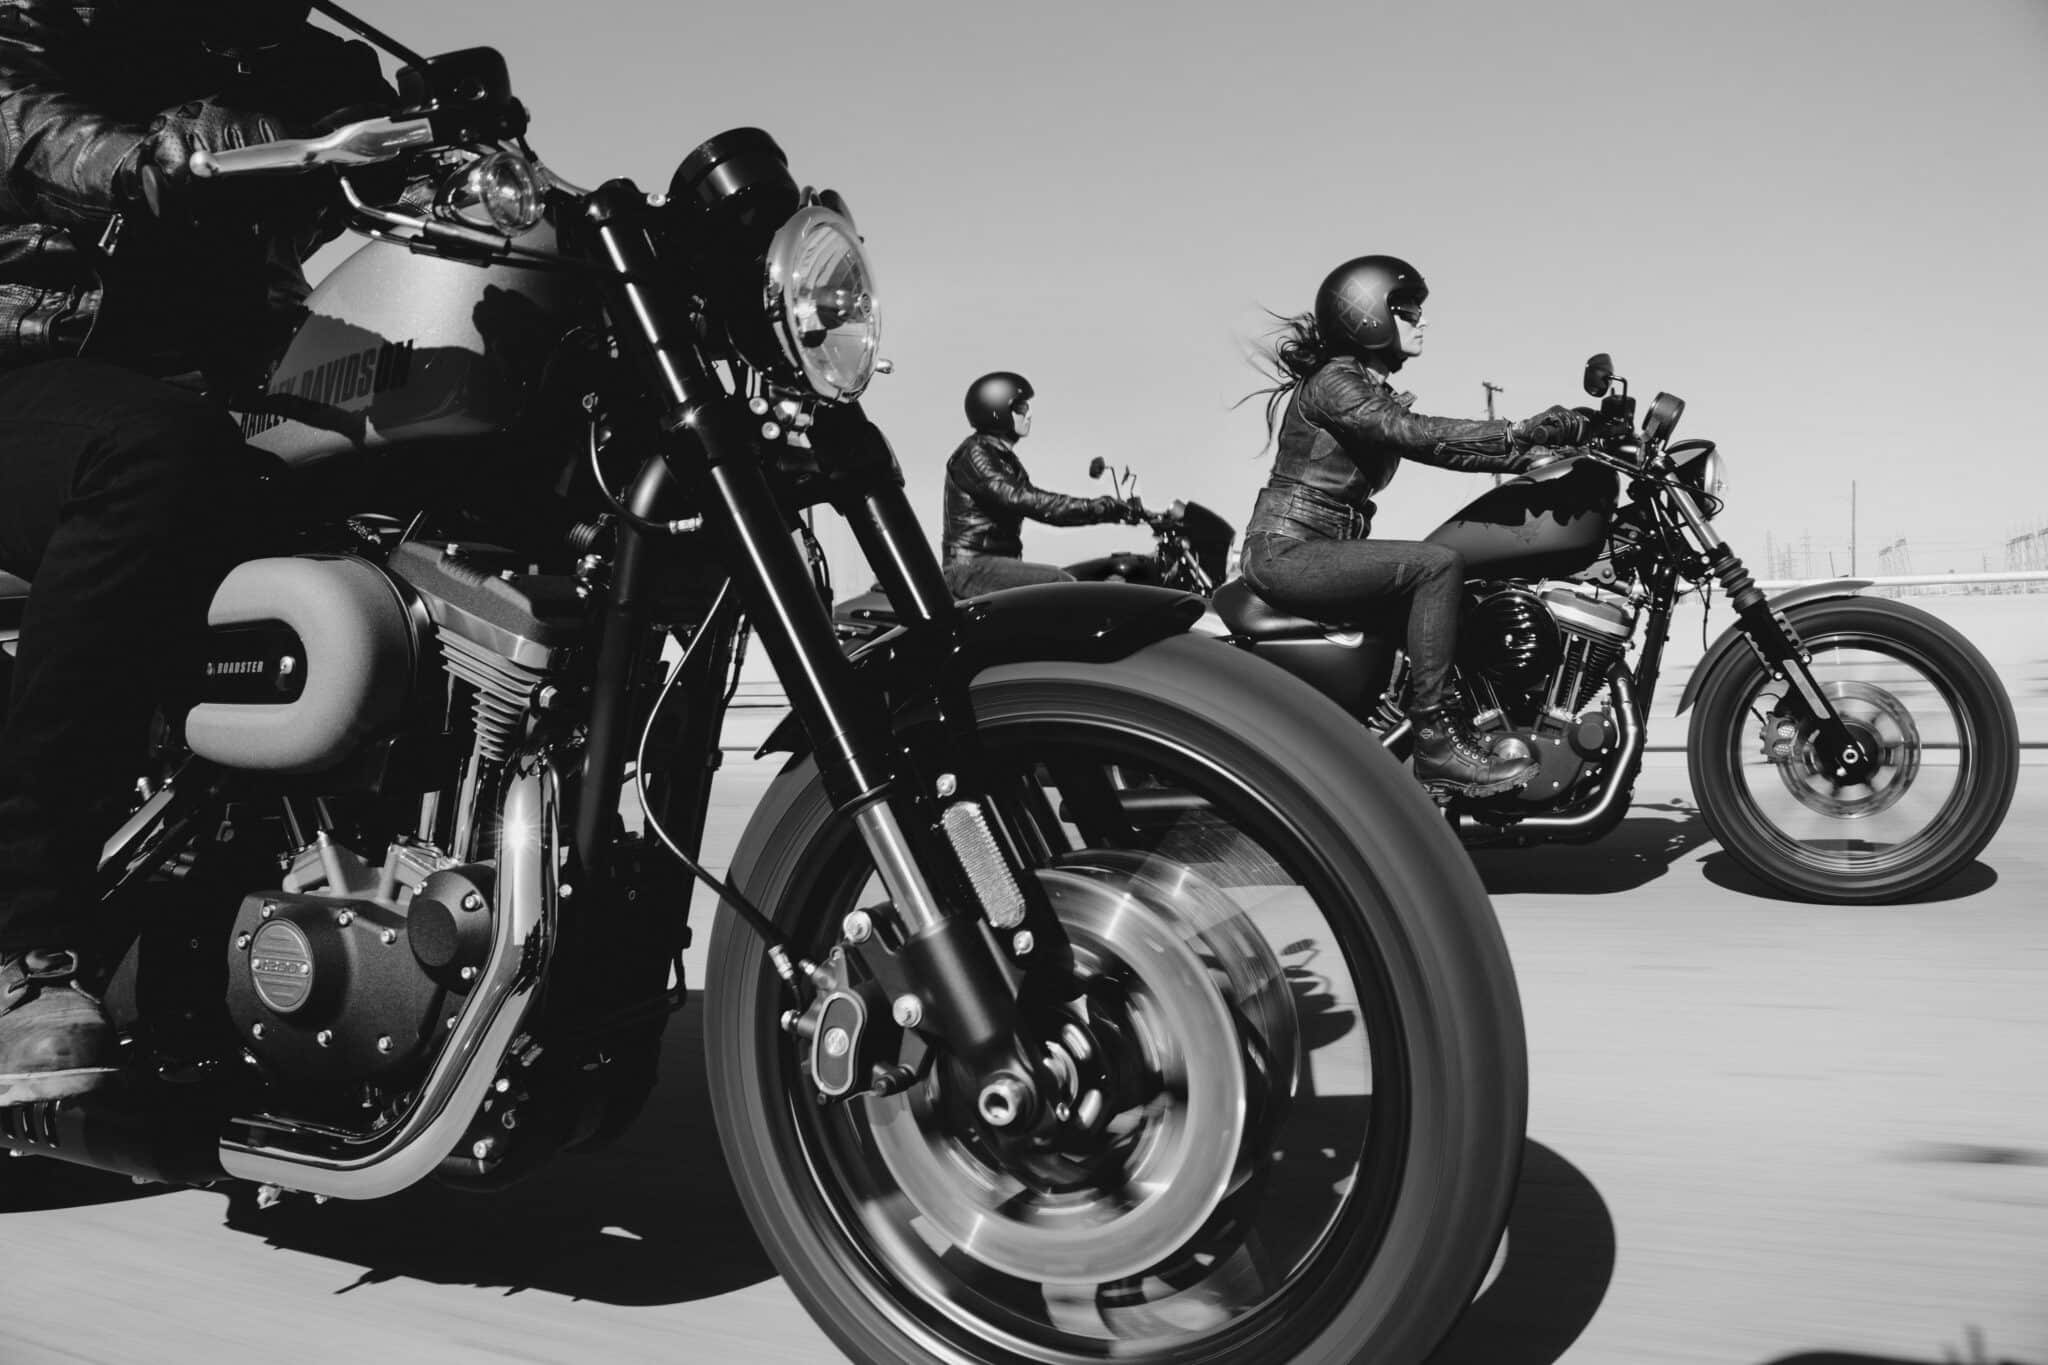 guide complet de la maintenance des motos, astuces et conseils pour l'entretien efficace de votre moto.